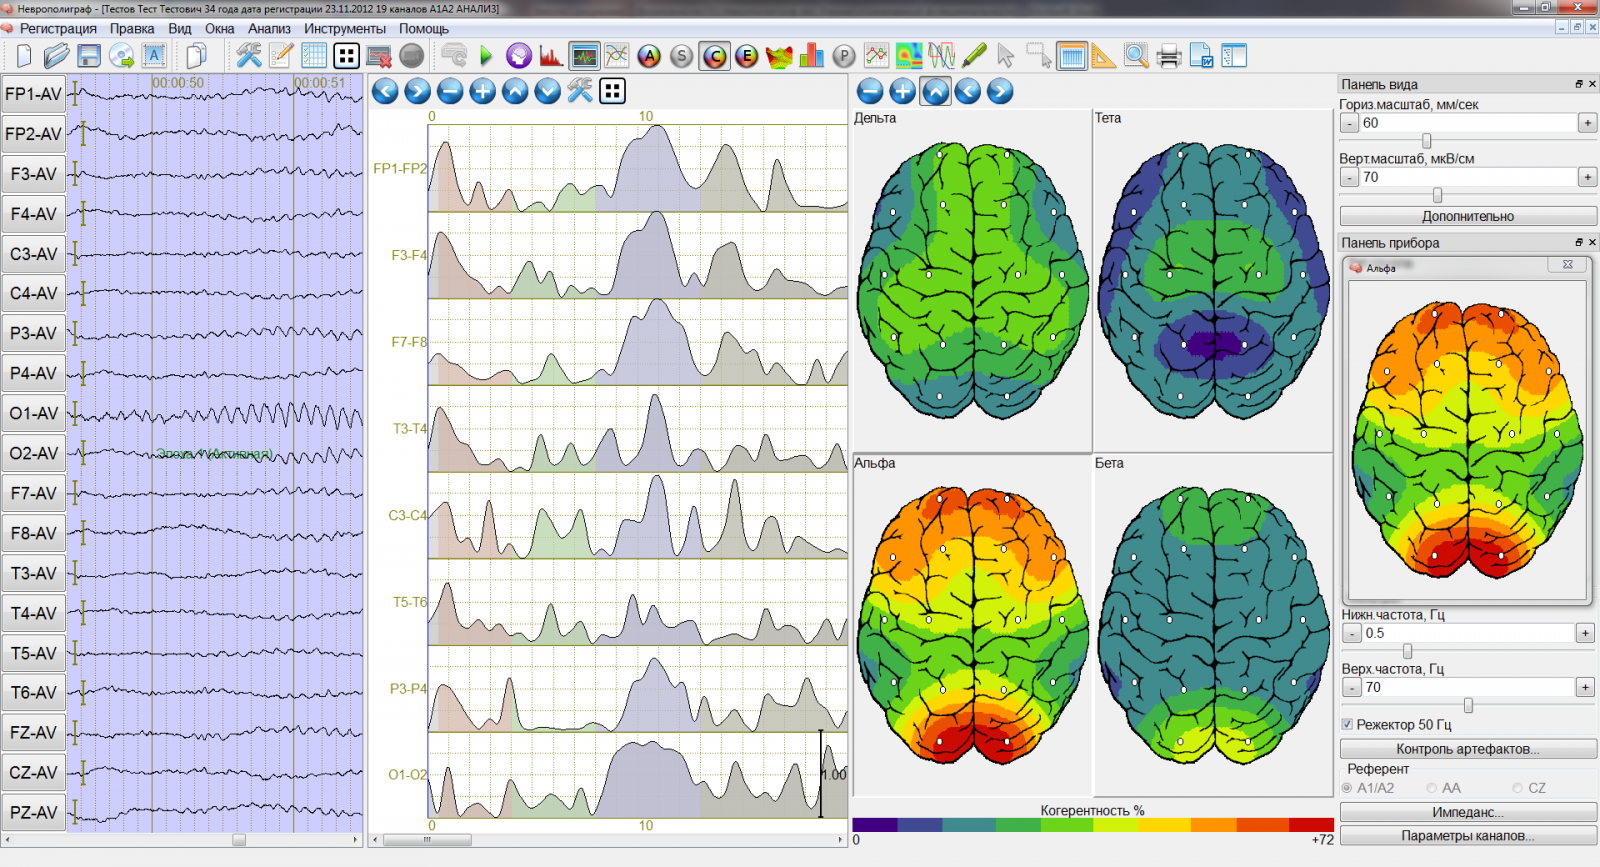 Компьютерная ээг. Картирование электрической активности мозга. Картирование мозга ЭЭГ. Электроэнцефалография головного мозга (ЭЭГ). Компьютерная ЭЭГ С картированием головного мозга.